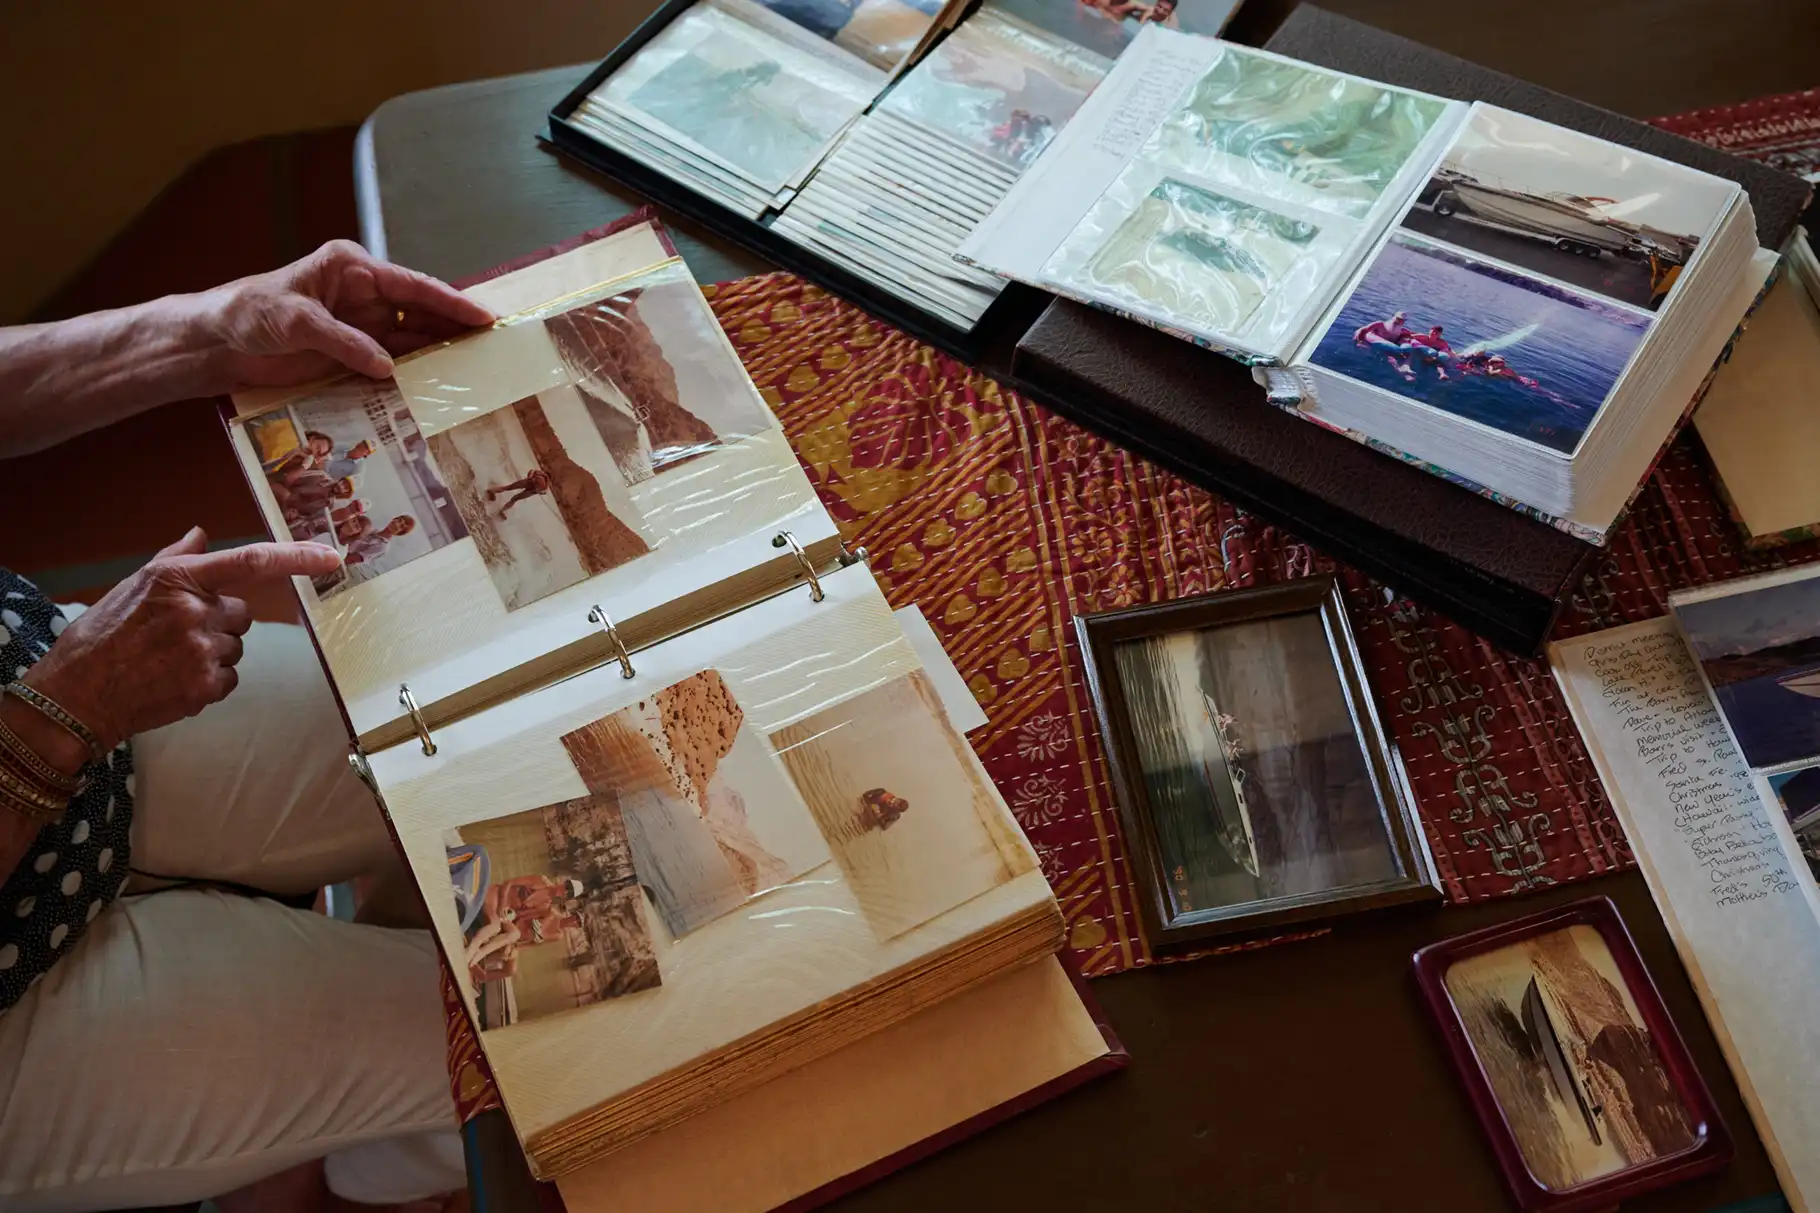 DiManno membolak-balik album foto kecoklatan yang menyimpan kenangan bertahun-tahun yang dihabiskan di Lake Mead.